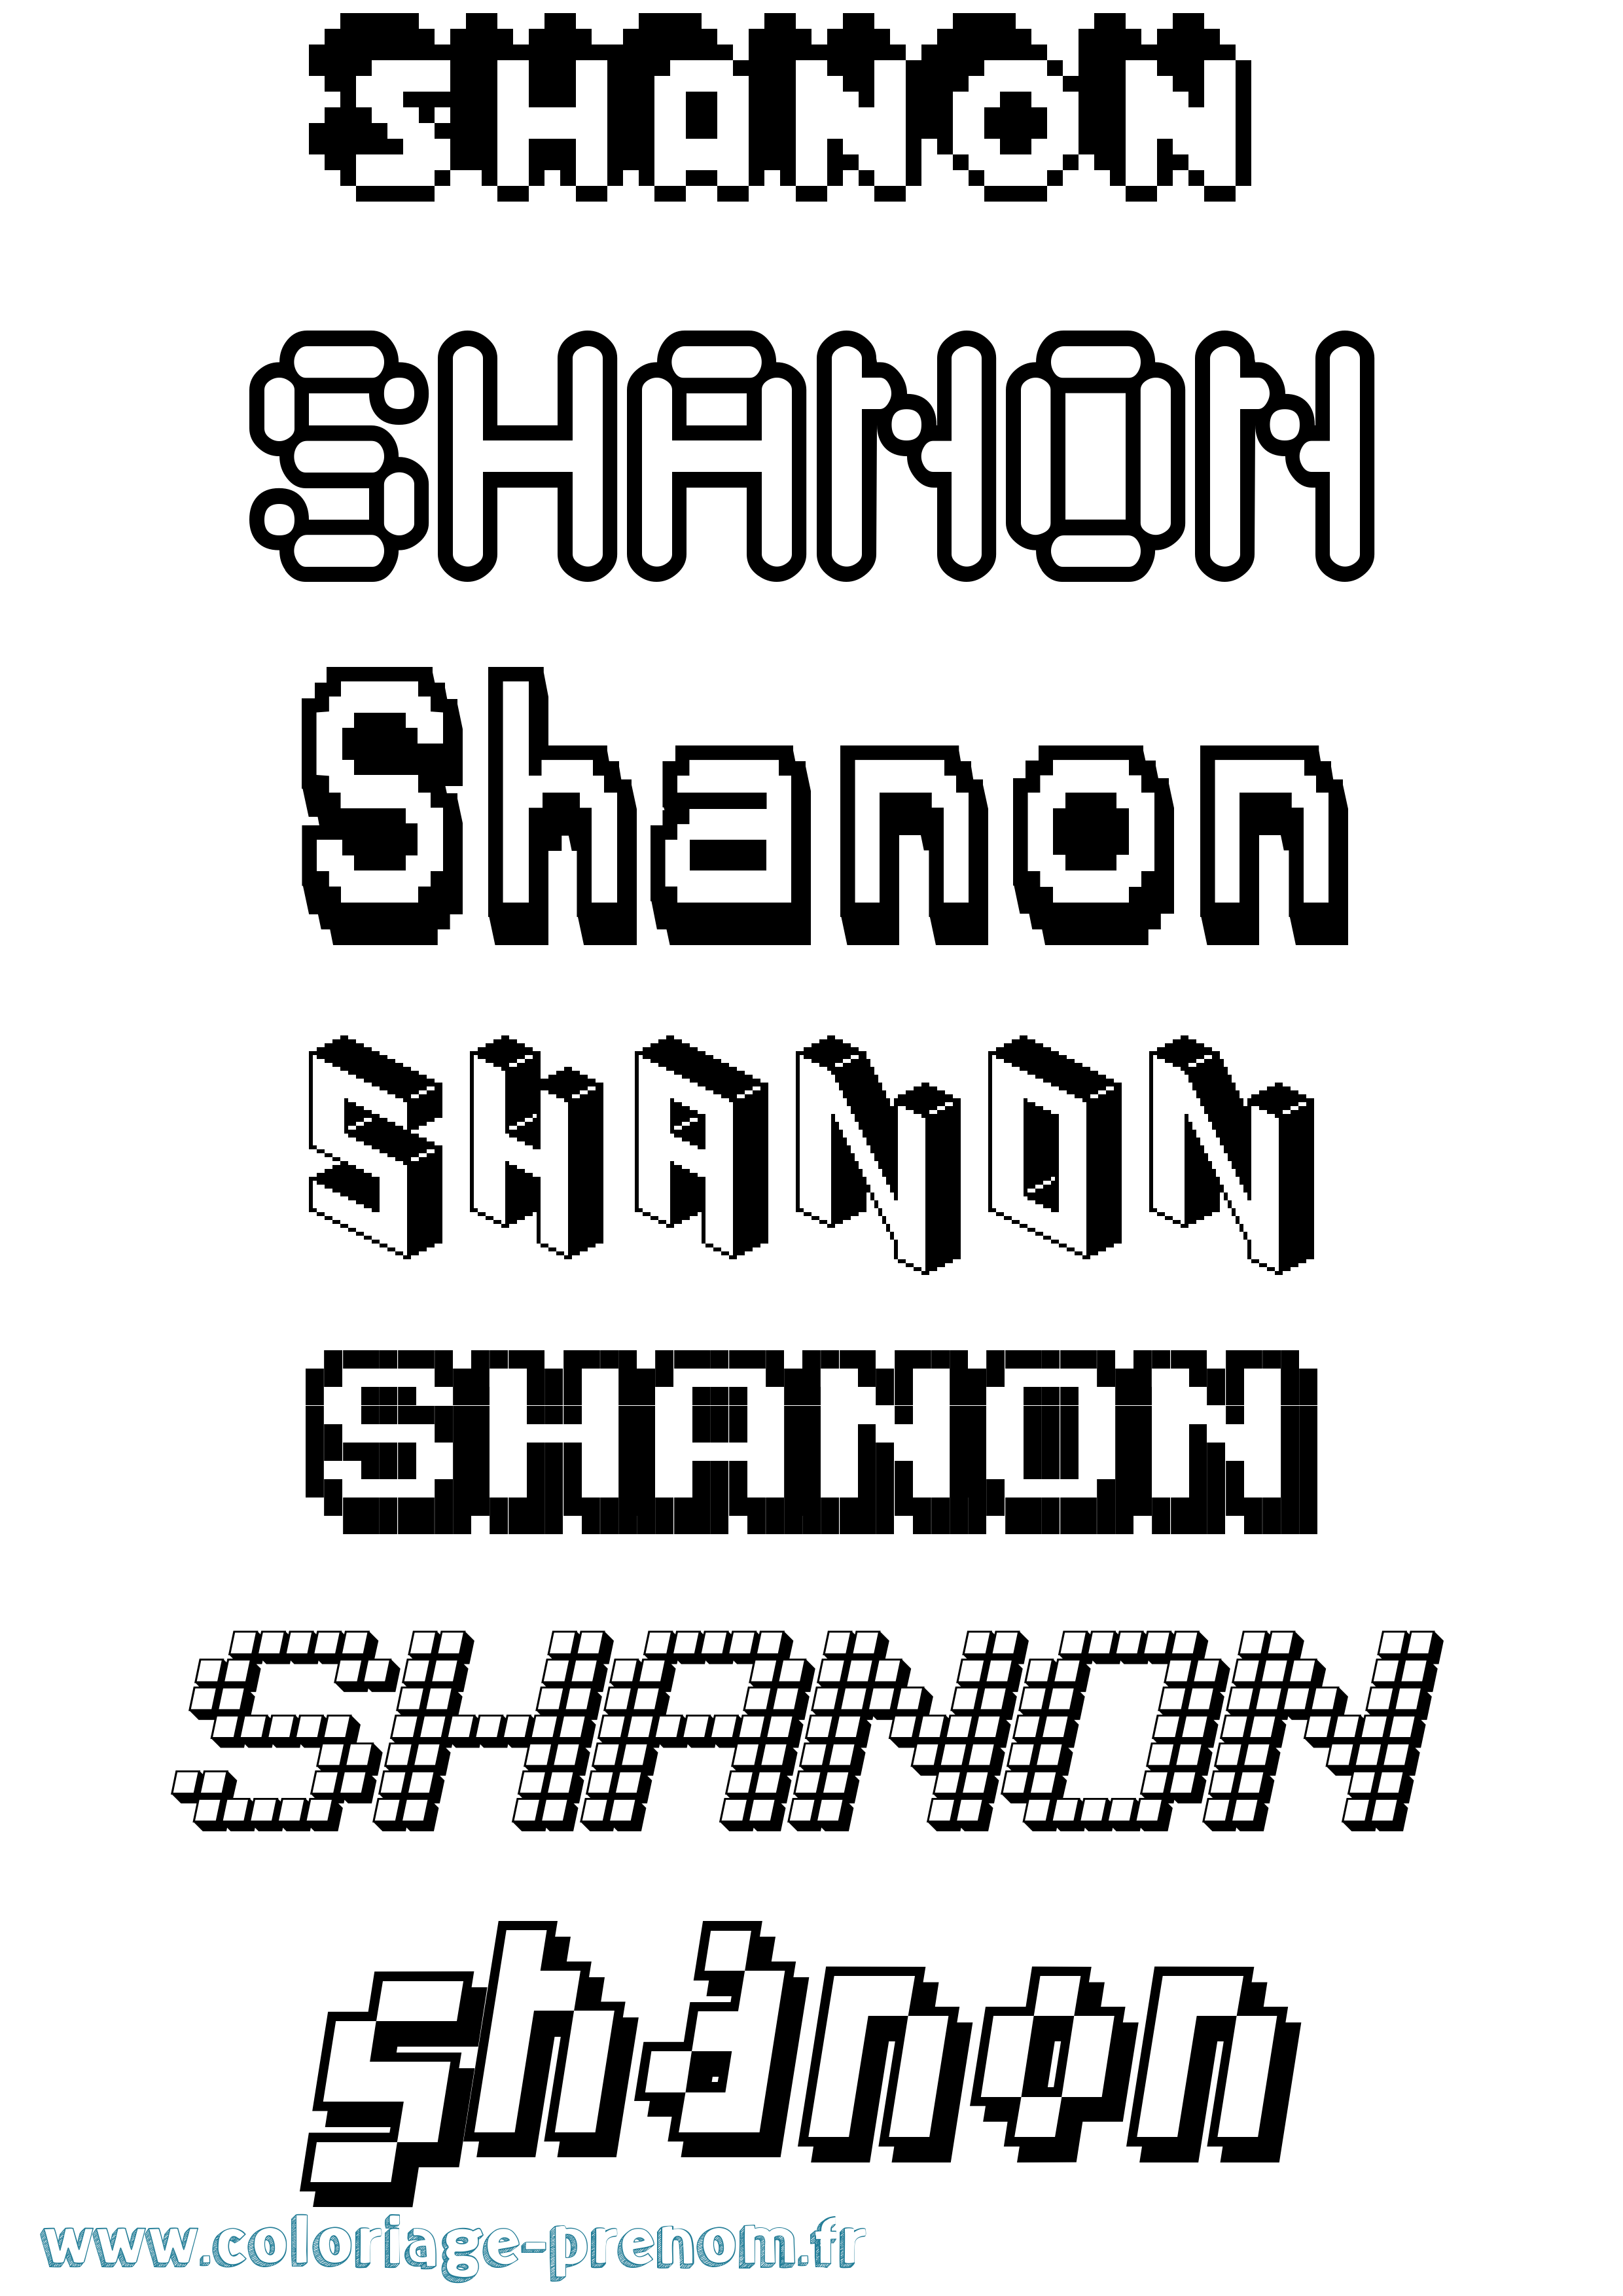 Coloriage prénom Shanon